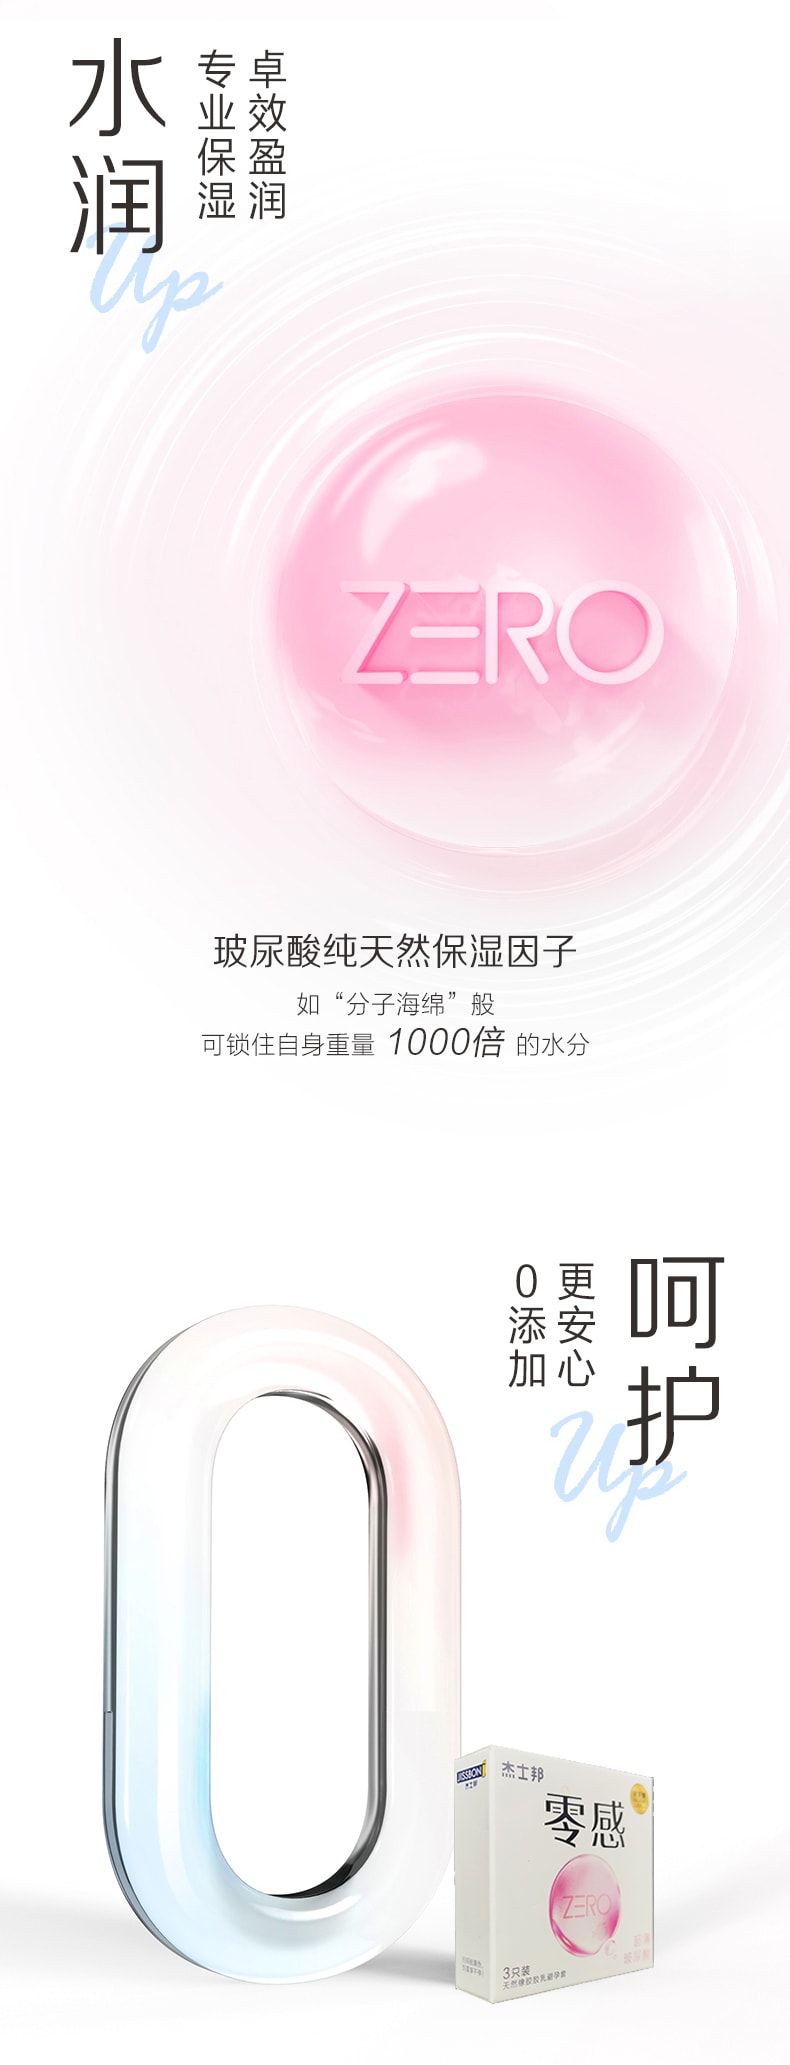 【正品保真】杰士邦零感超薄玻尿酸  ZERO零感安全套 计生用品 避孕套3只装